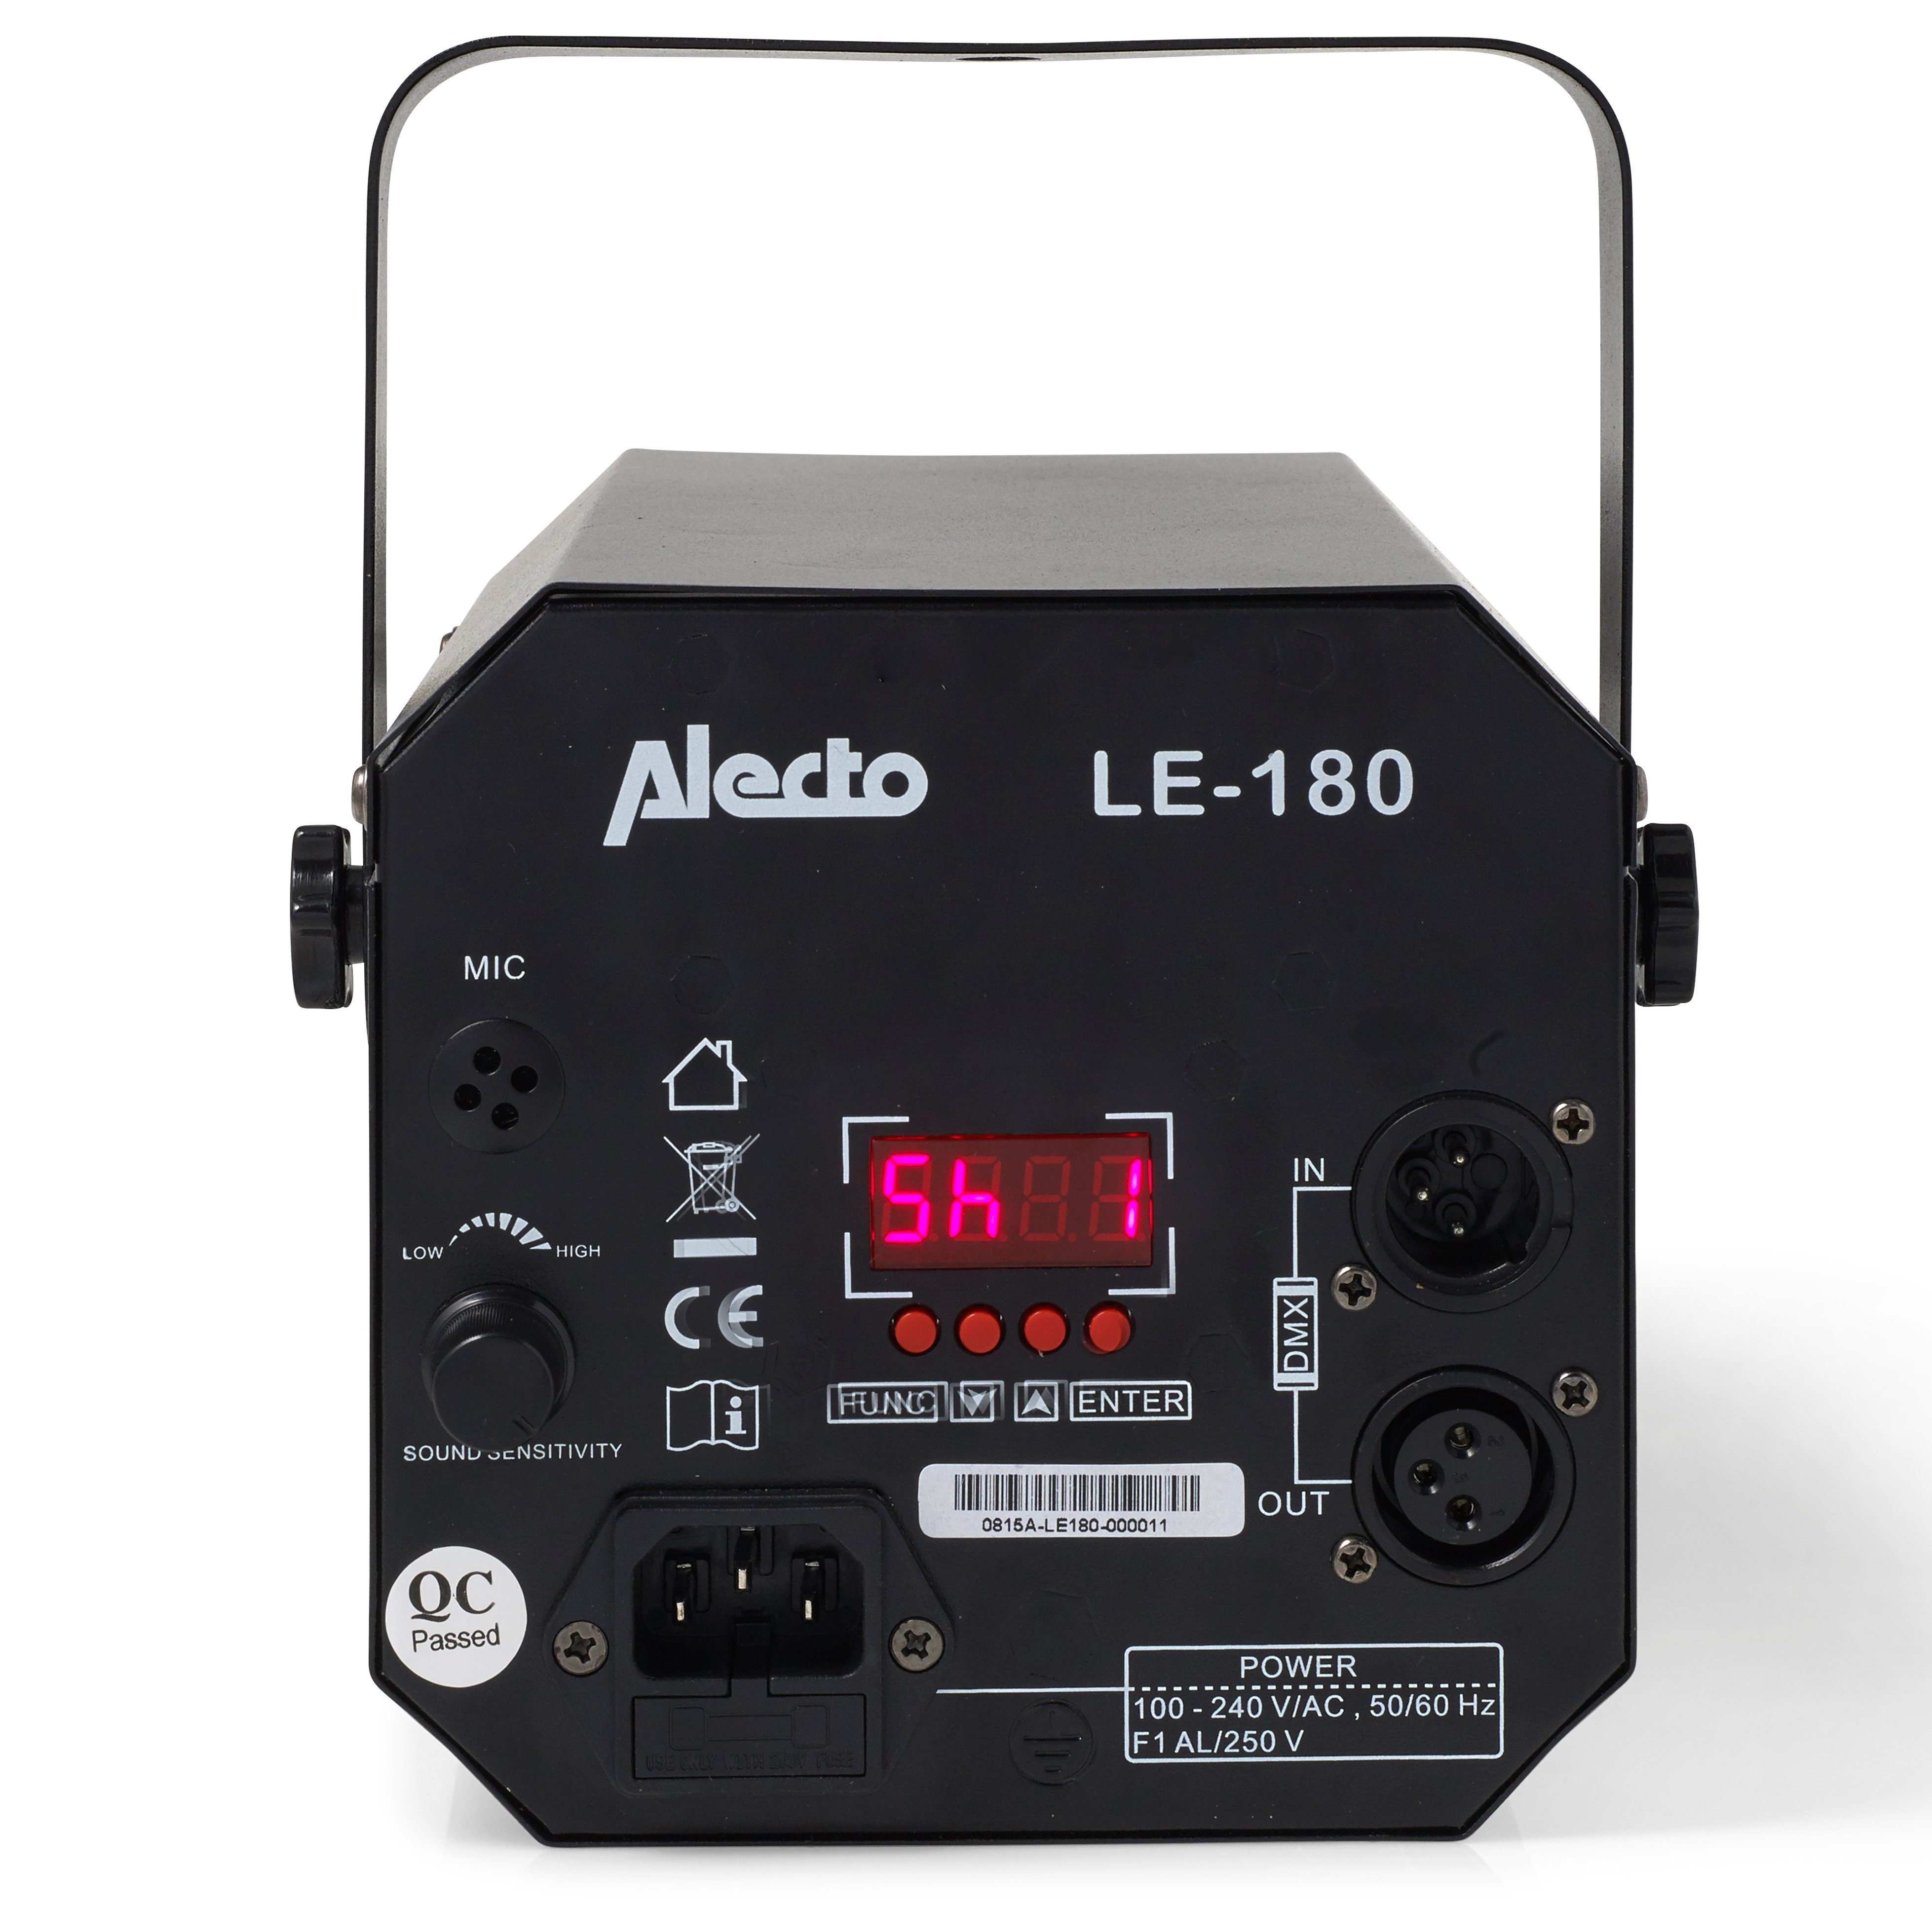 Alecto LED Discolicht Stroboskop- Strahleneffekt, Blau,Grün,Rot,Weiß Dynamischer einstellbar, LE-180, Farbeffekte und